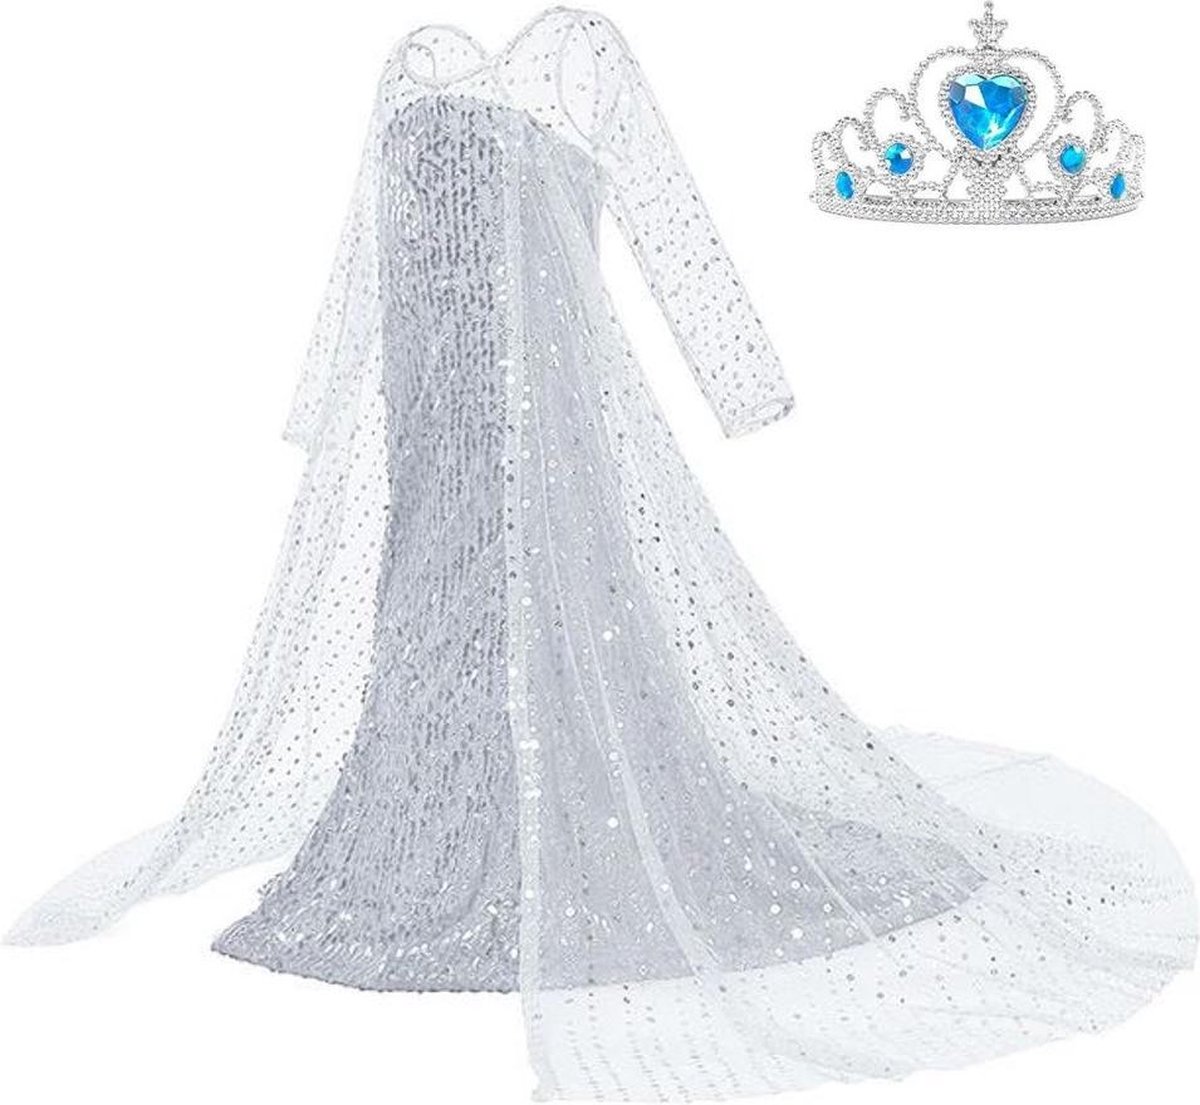 Elsa jurk IJskoningin Deluxe met lange sleep 104-110 (110) + kroon  Prinsessen jurk... | bol